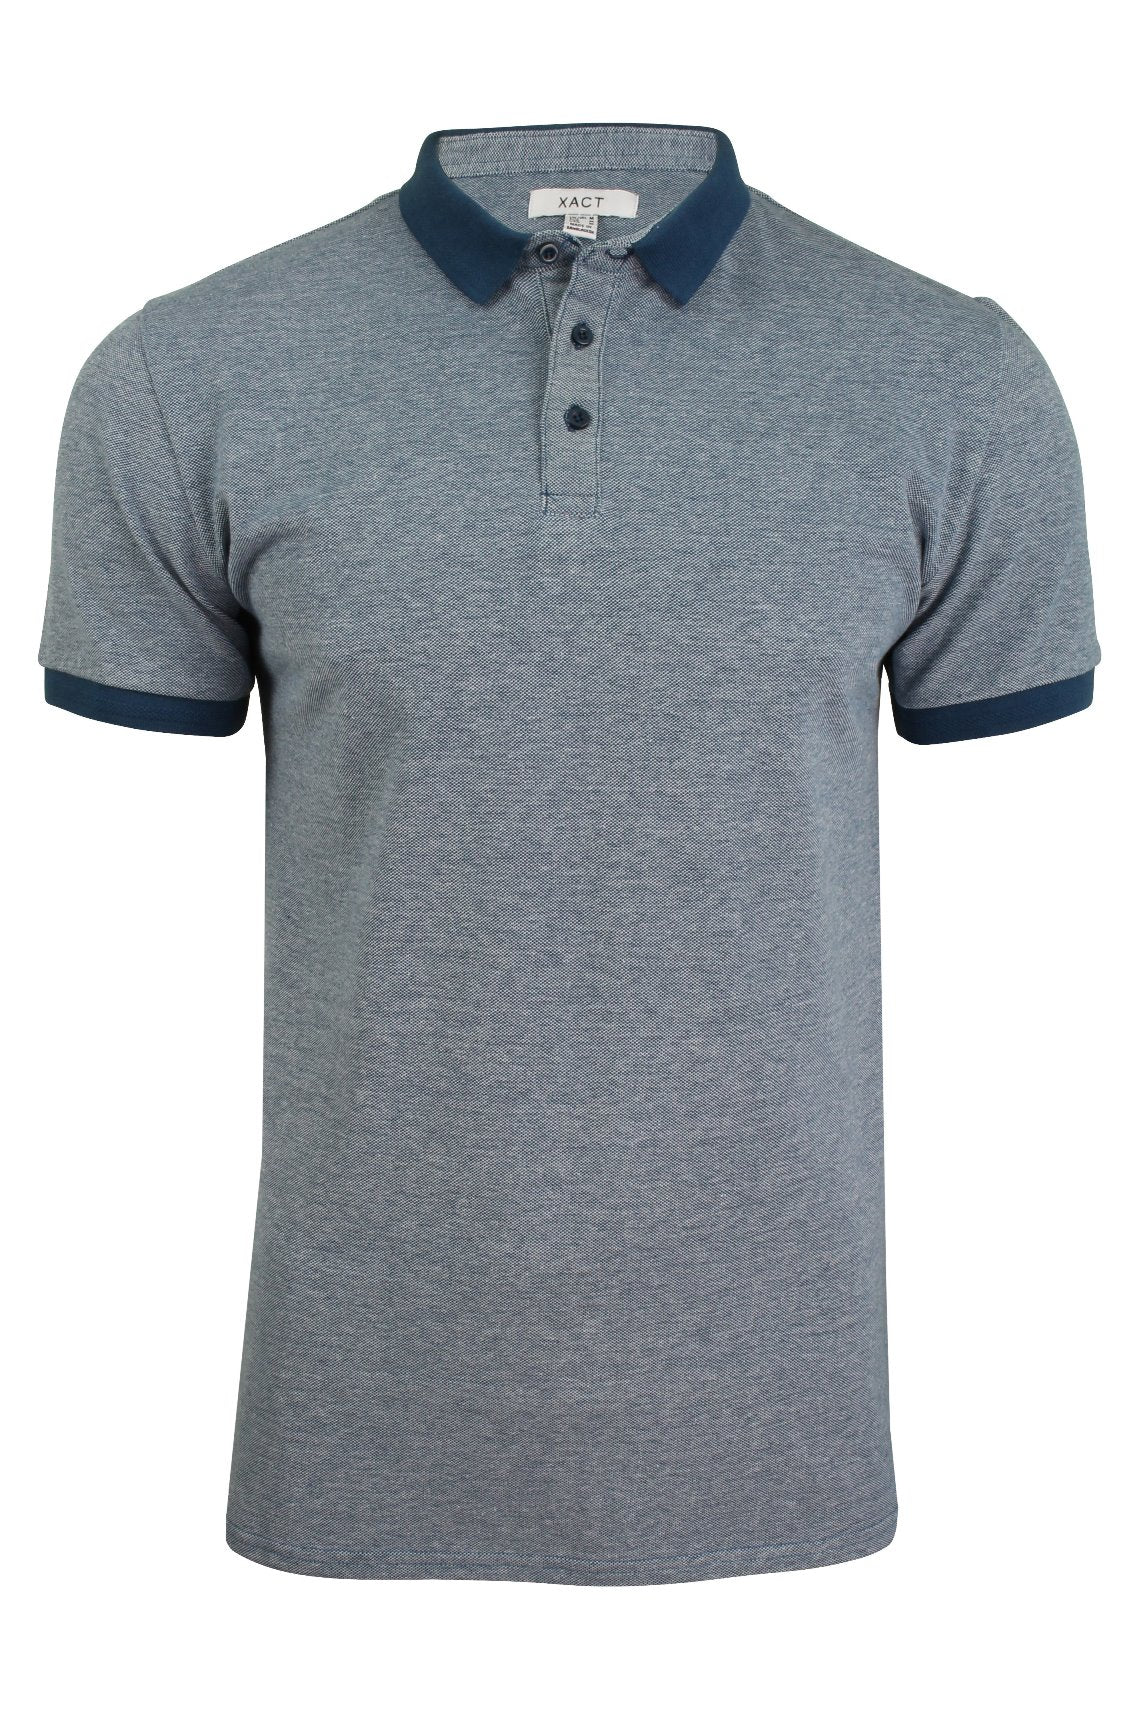 Xact Men's Birdseye Pique Polo T-Shirt Short Sleeved - 100% Cotton-2